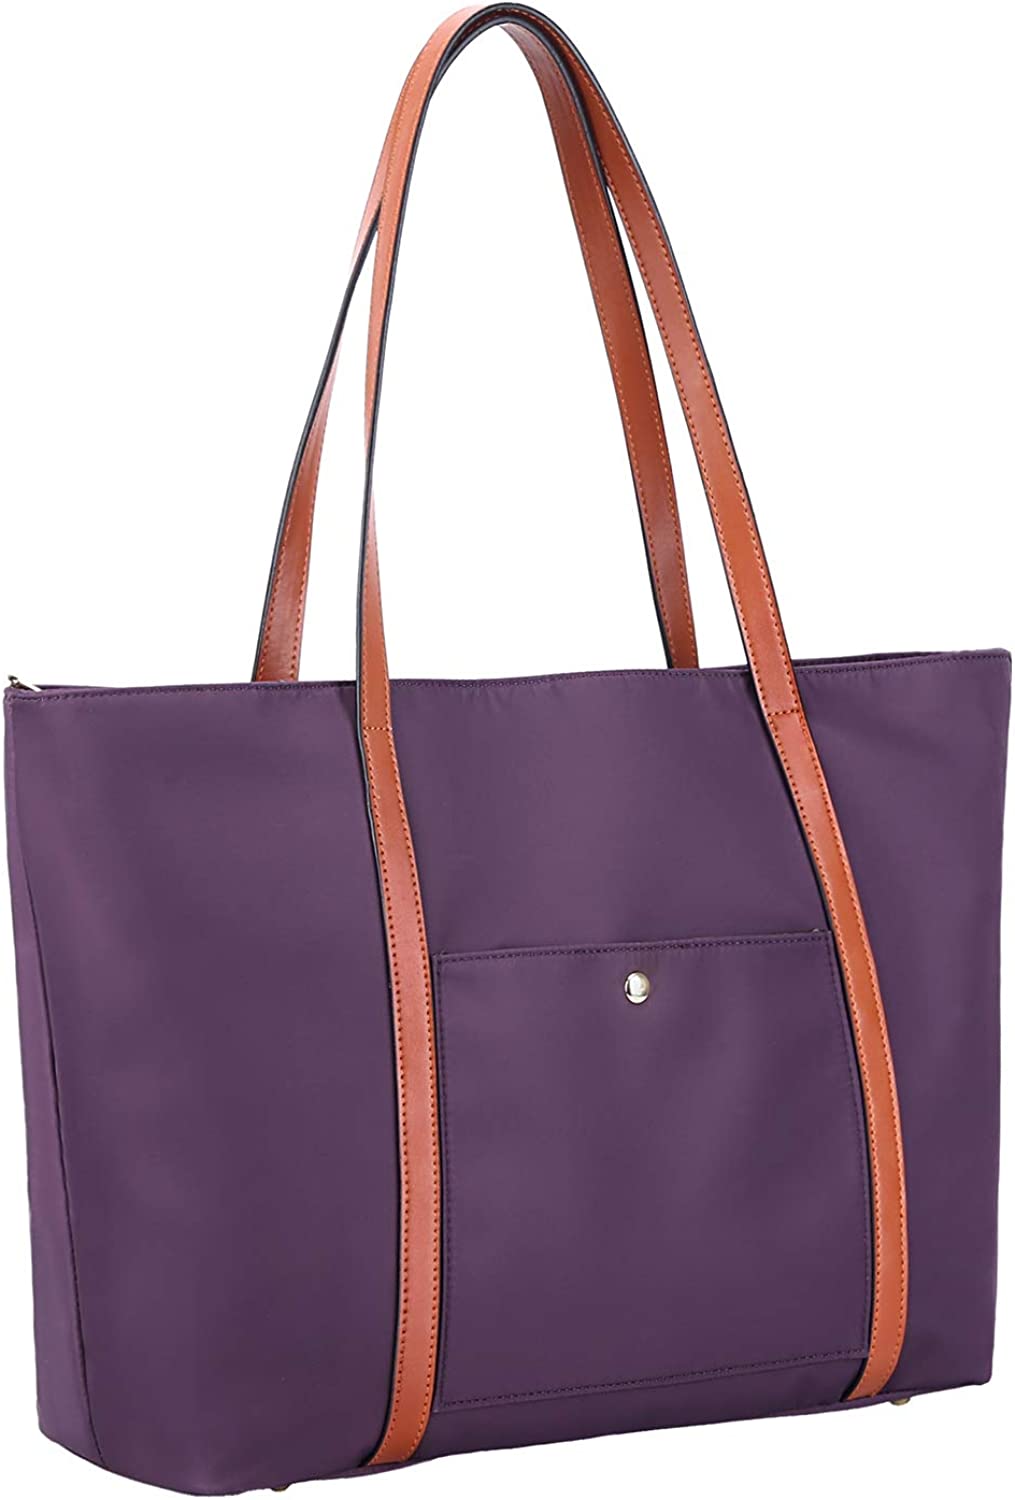  YALUXE Real Leather Shoulder Bag Medium Size Handbag